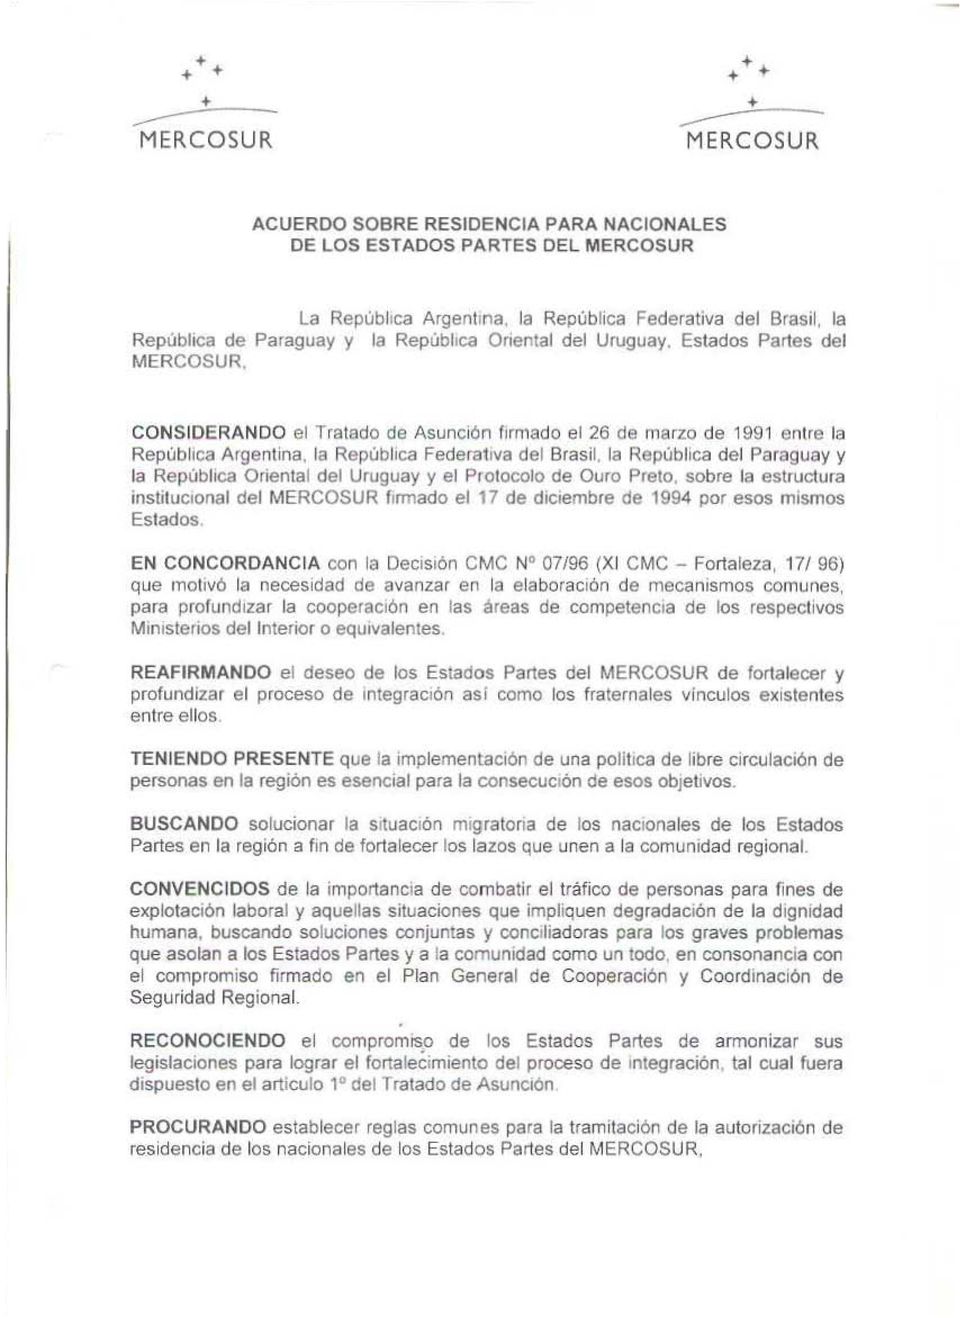 la República Federativa del Brasil, la República del Paraguay y la Repubhca Cuenlal del Uruguay y el Protocolo de Curo Preto, sobre la estructura instlluclonal del firmado el 17 de diciembre de 1994